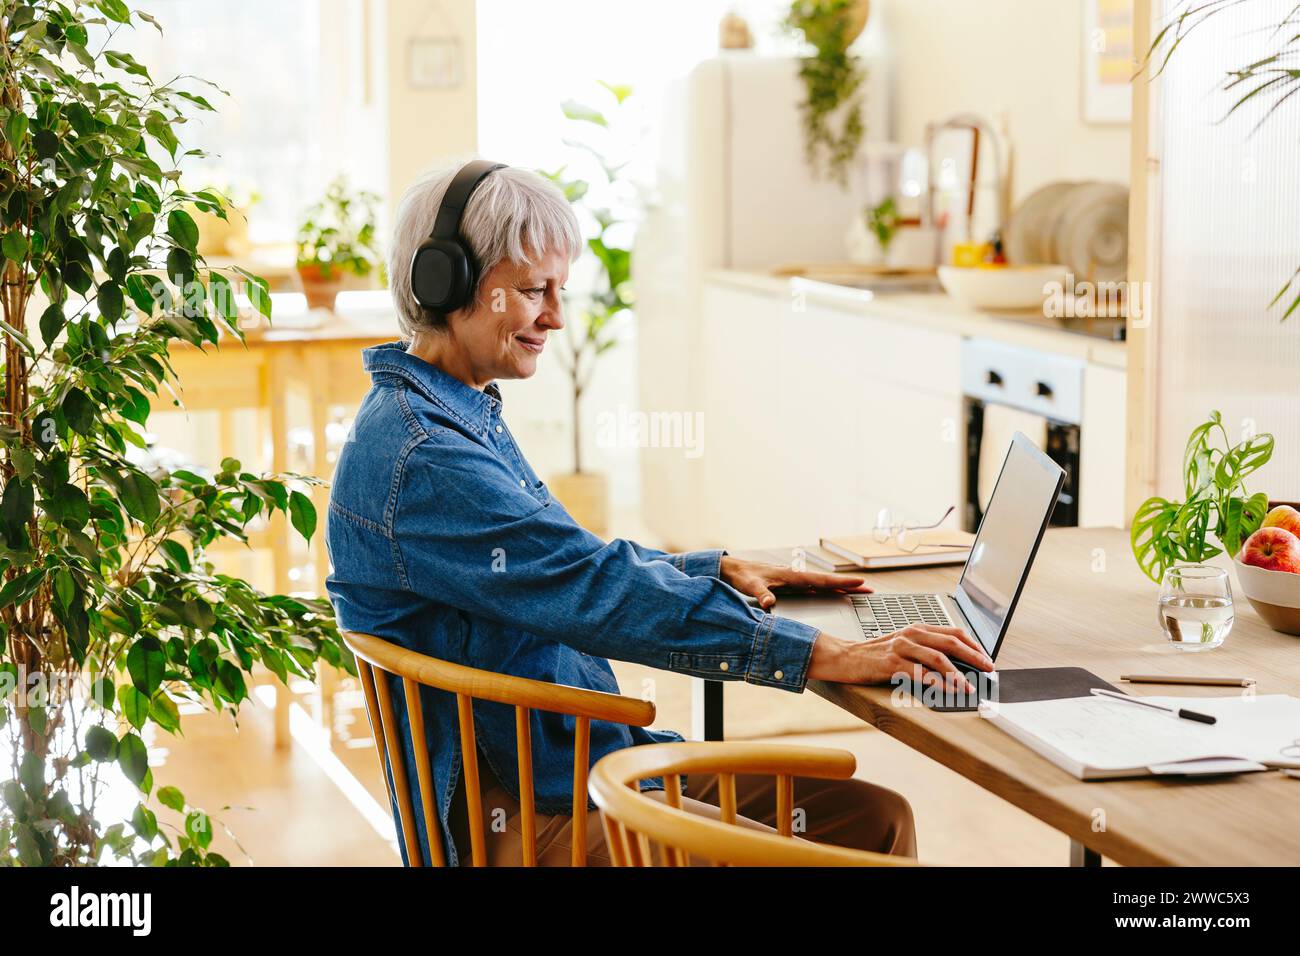 Lächelnder Freelancer mit schnurlosen Kopfhörern im Home Office Stockfoto